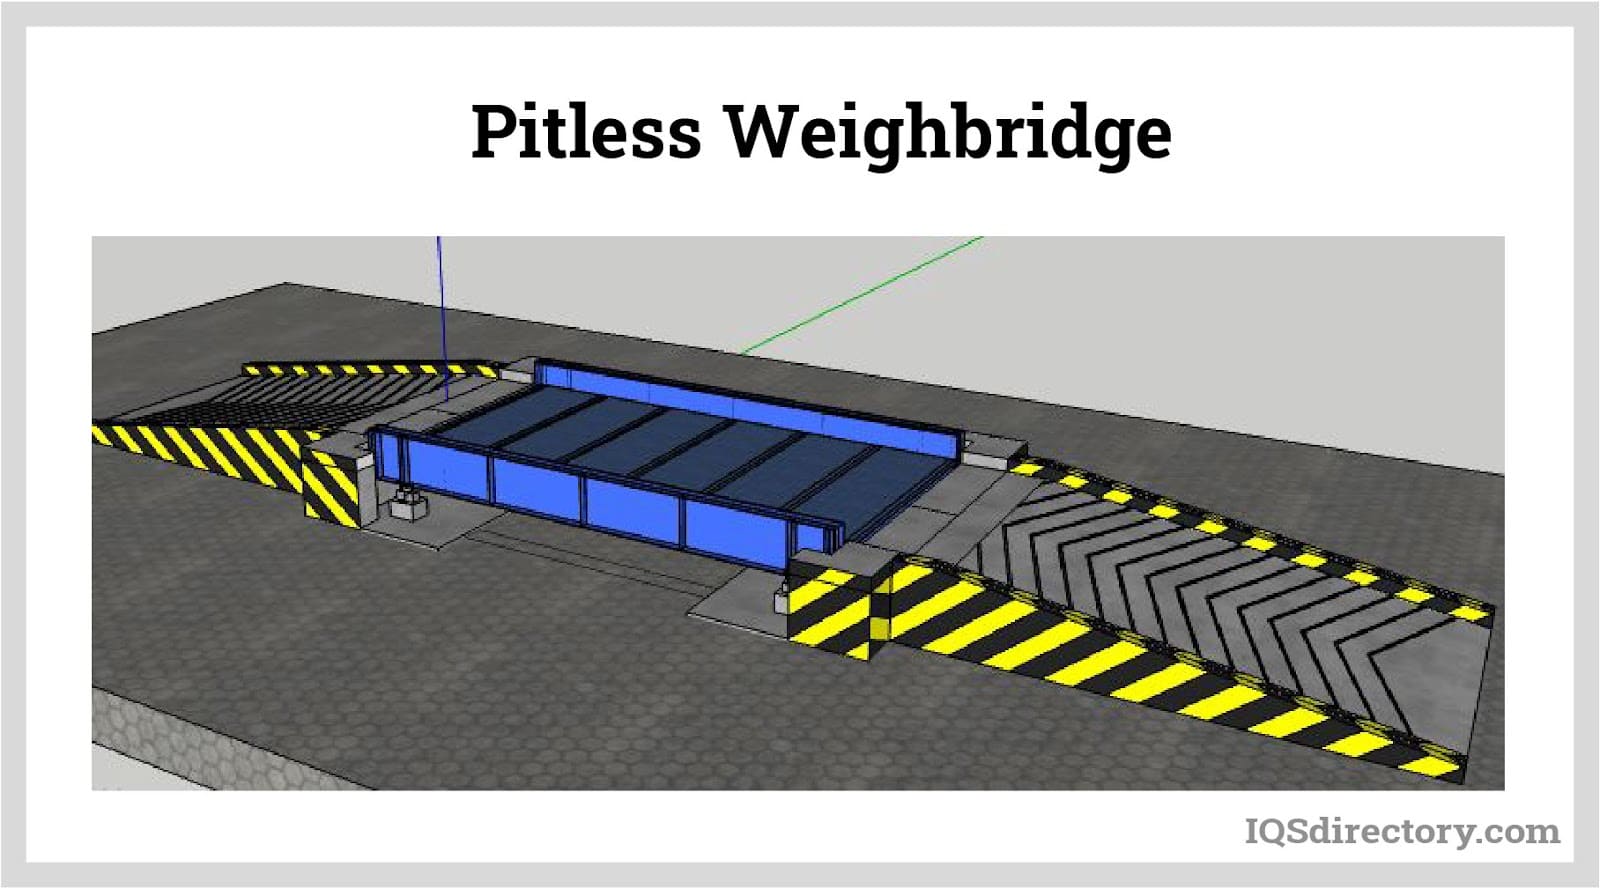 Pitless Weighbridge